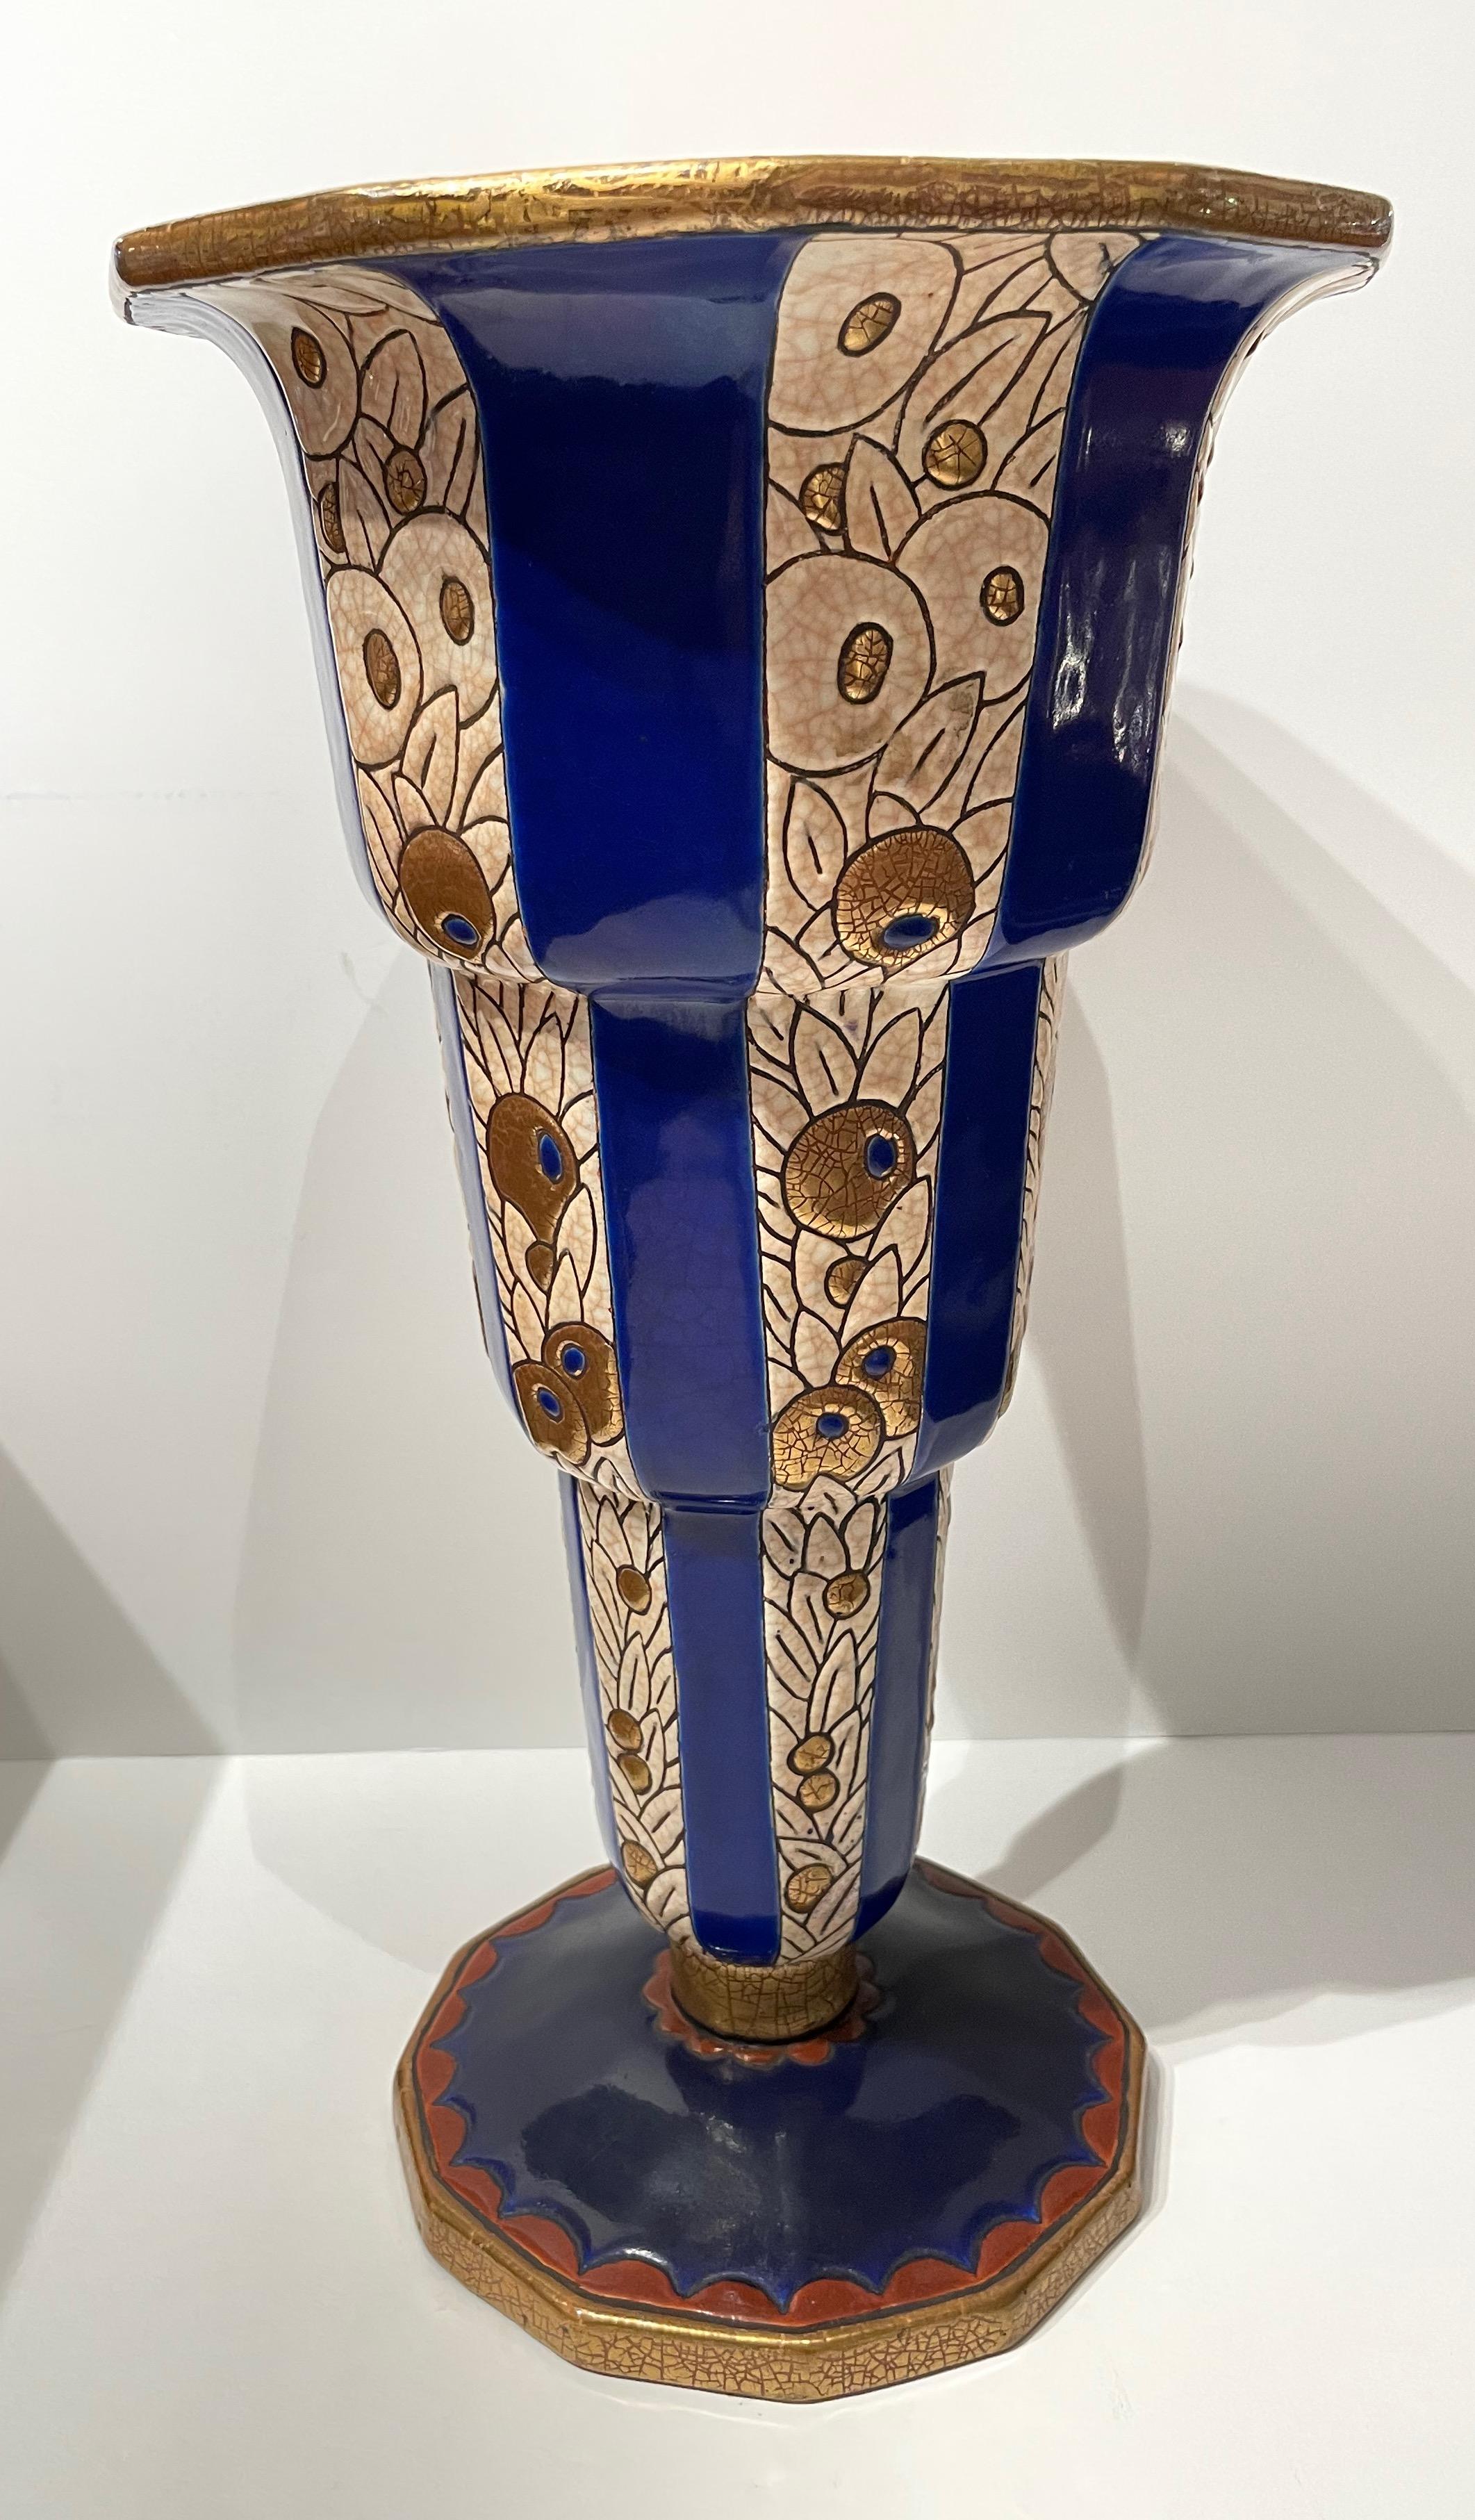 Longwy Art Deco Französisch Cloisonné Keramik-Vase. Atemberaubende extra große Größe, helle Farbe mit facettierter Basis. Abgestuftes Design in Blau und Gold mit wiederholtem Blumenmuster, das von blauen Dreieckslinien durchschnitten wird. Dieses